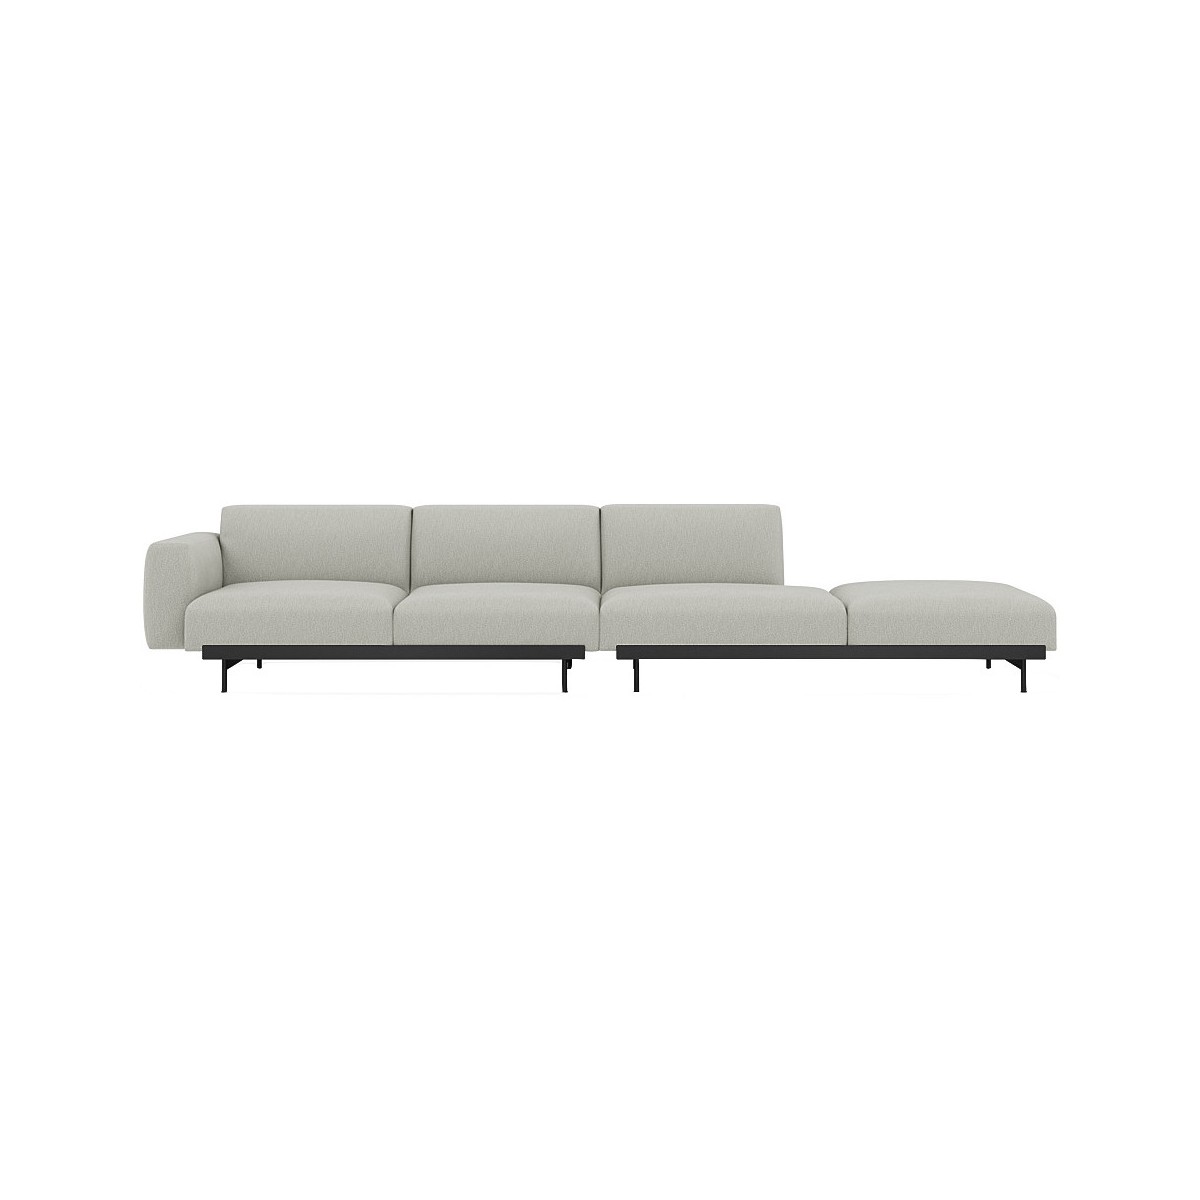 Clay 12 / black – In Situ 4-seater sofa / configuration 3 – 360 x 107 cm